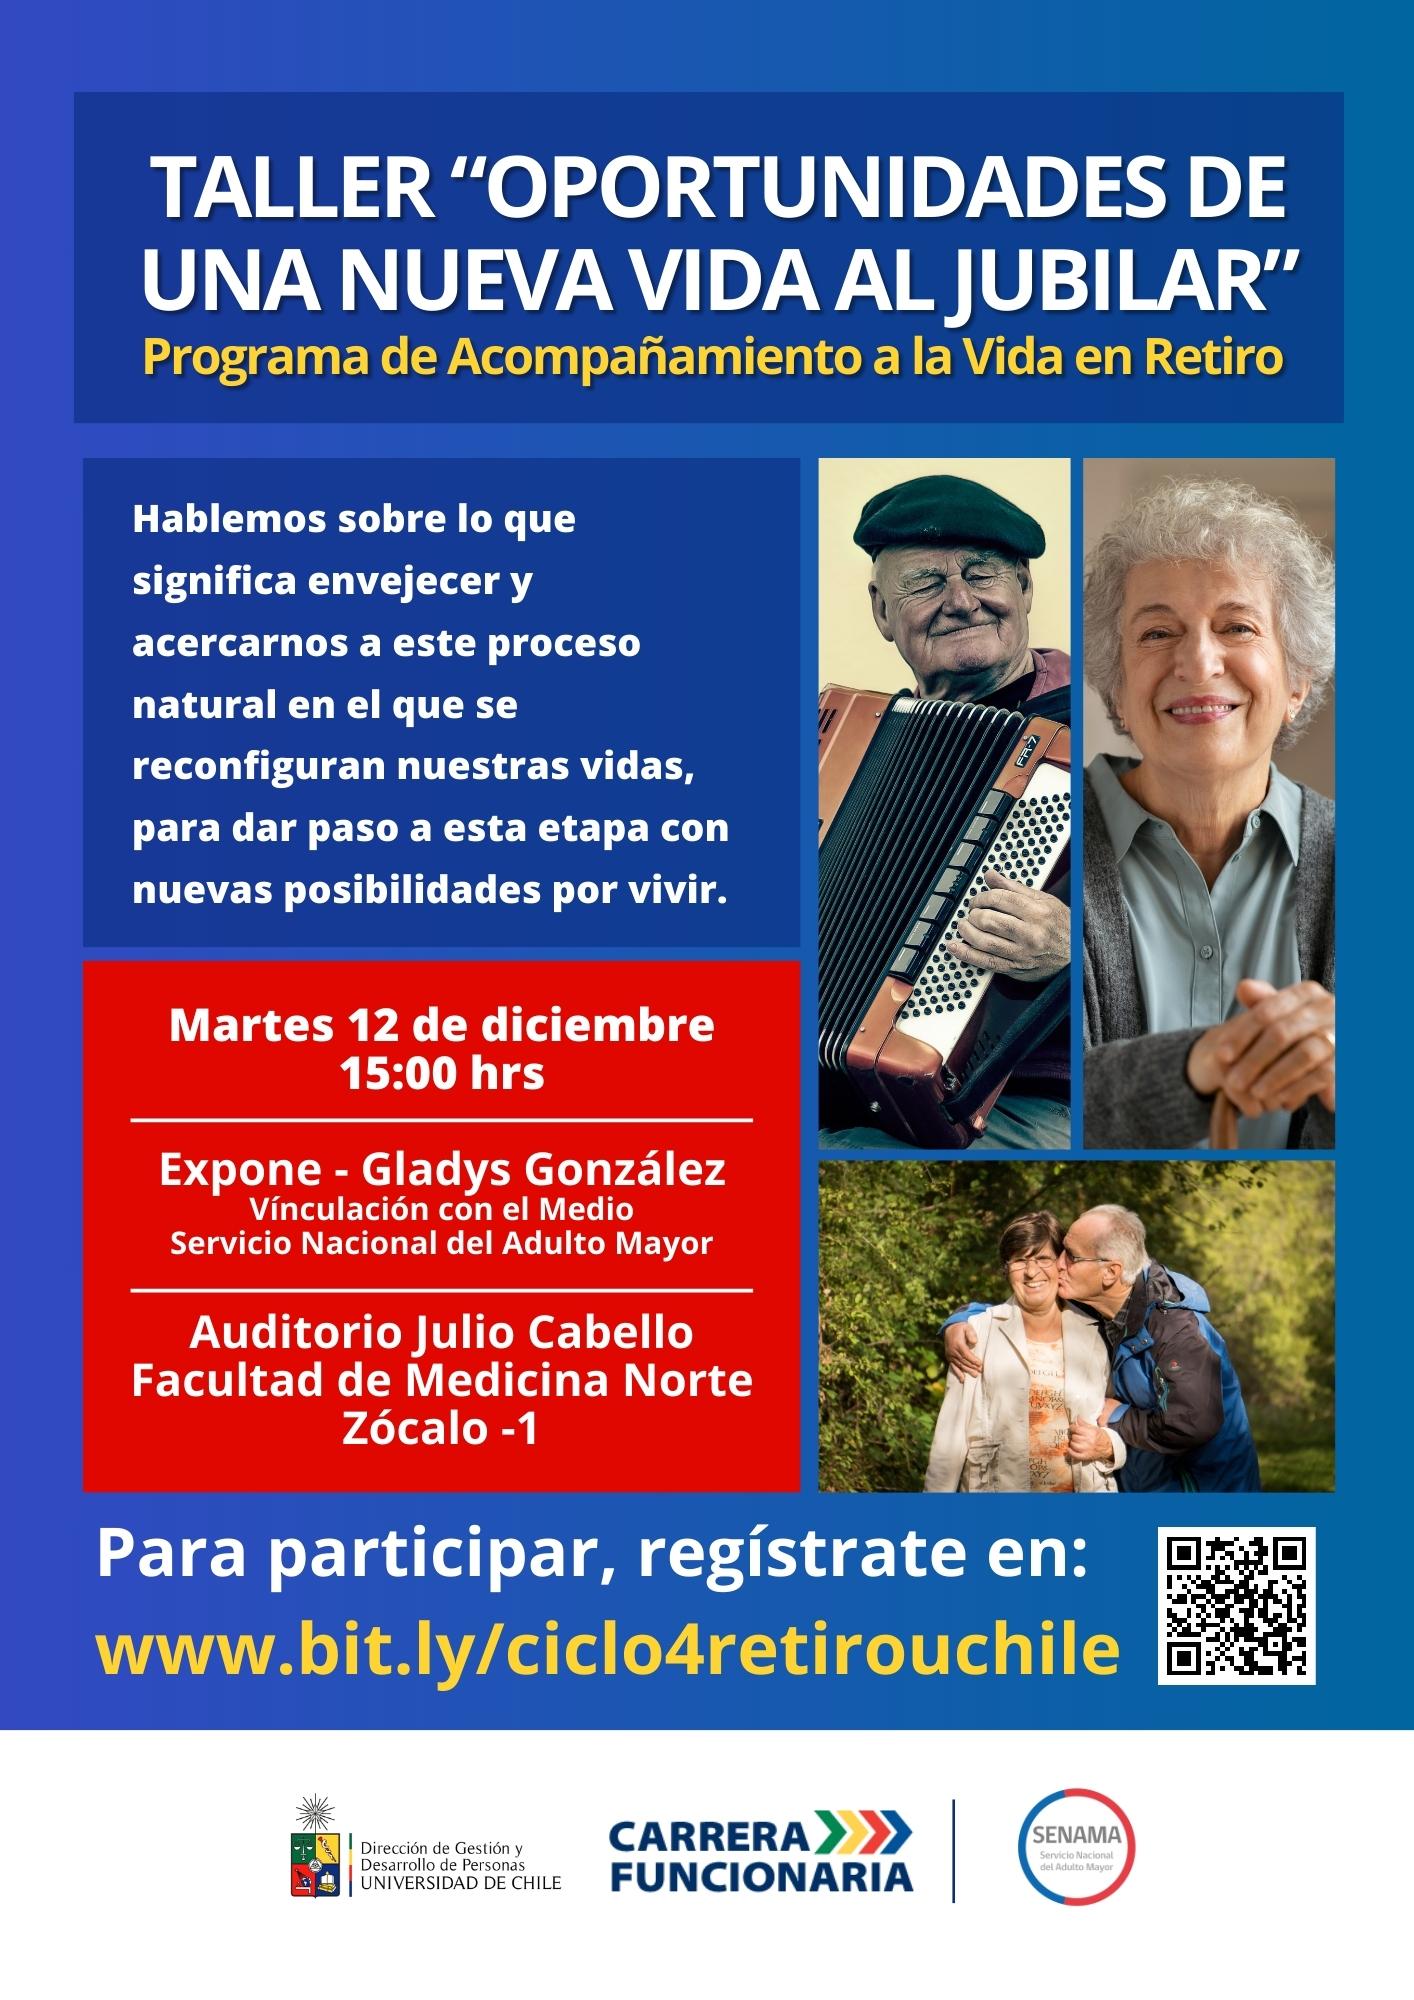 Esta instancia se realiza en el marco del Programa de Acompañamiento a la Vida en Retiro para el personal de colaboración y académico de la Universidad de Chile, en conjunto con el Servicio Nacional del Adulto Mayor (SENAMA).